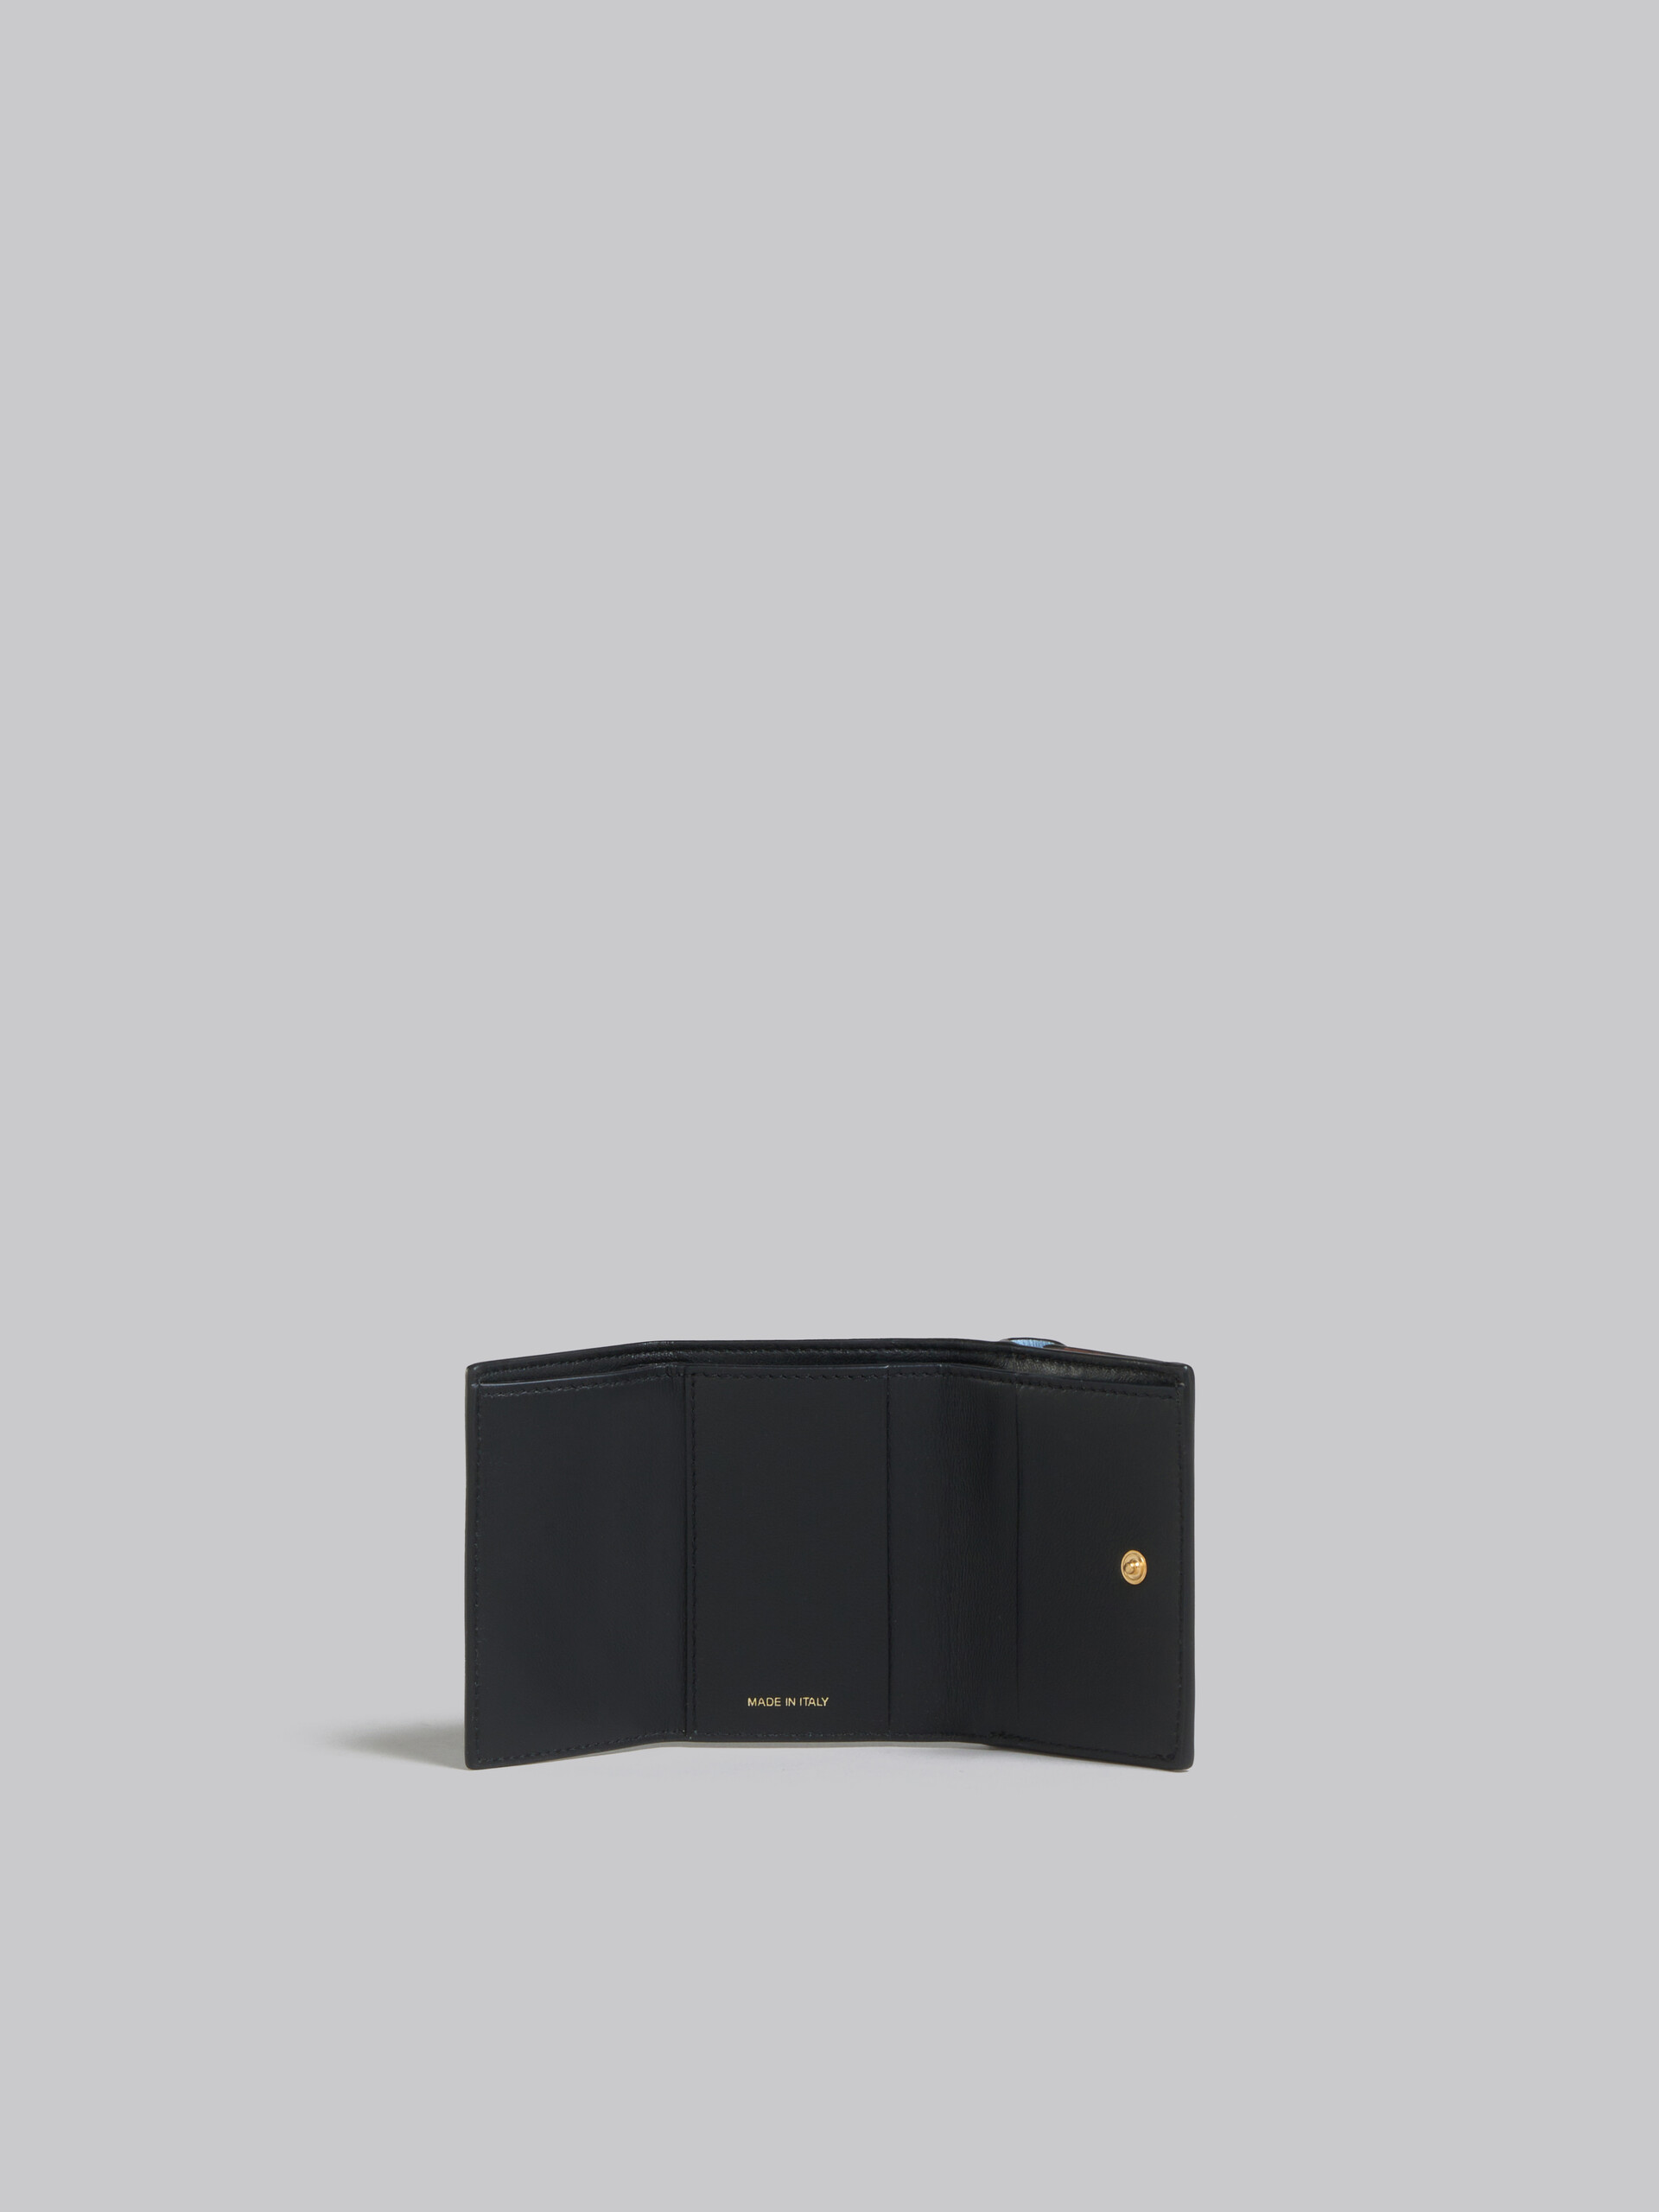 グレー、ブラックレザー製三つ折りウォレット - 財布 - Image 2